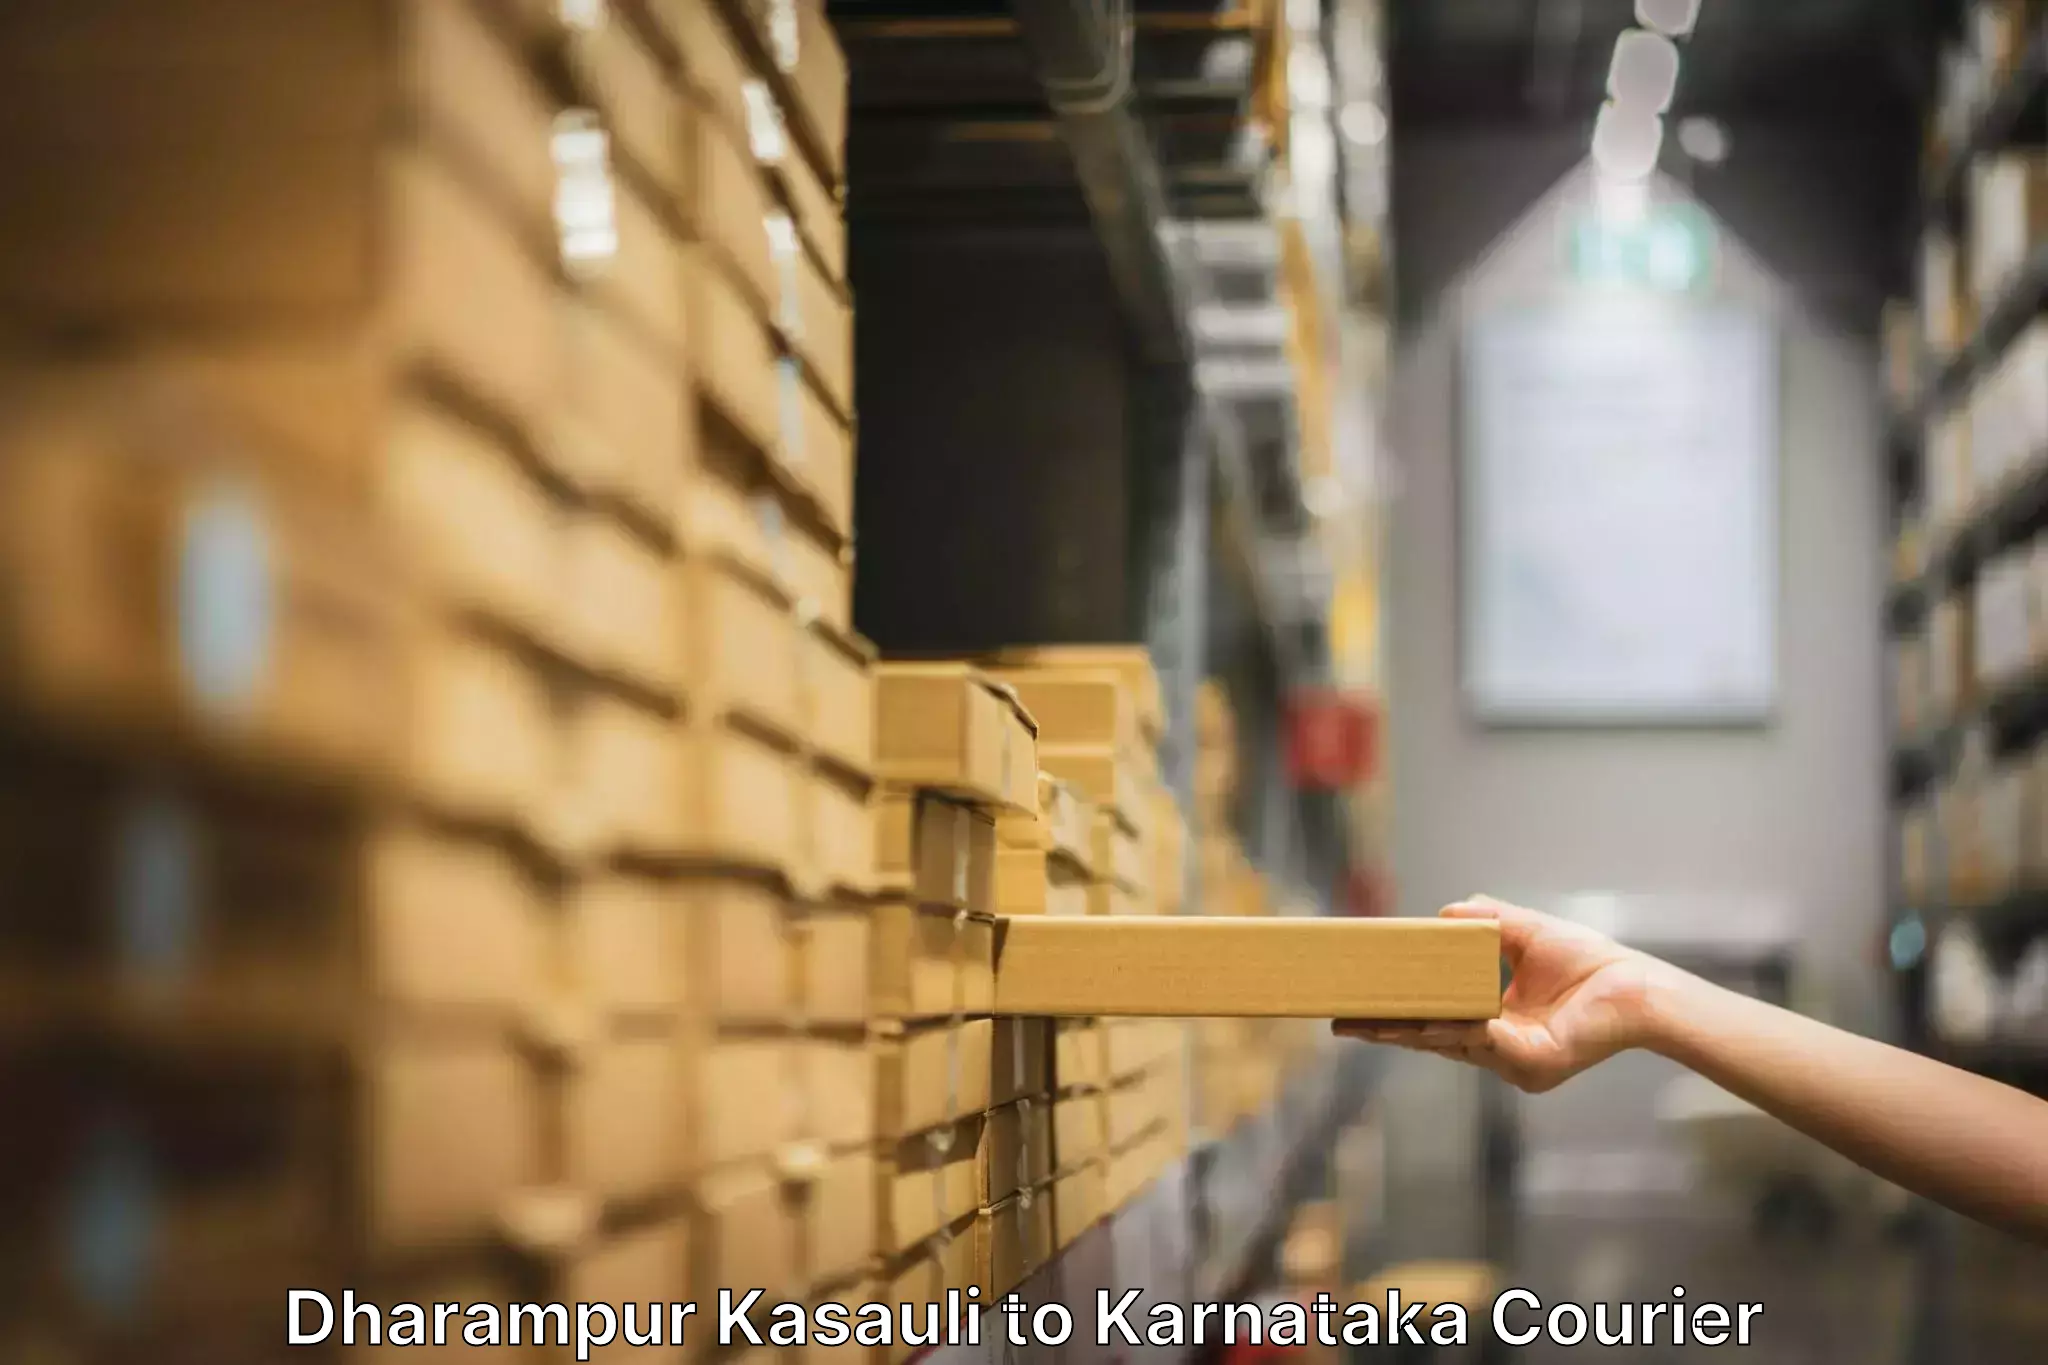 Furniture transport specialists Dharampur Kasauli to Channagiri